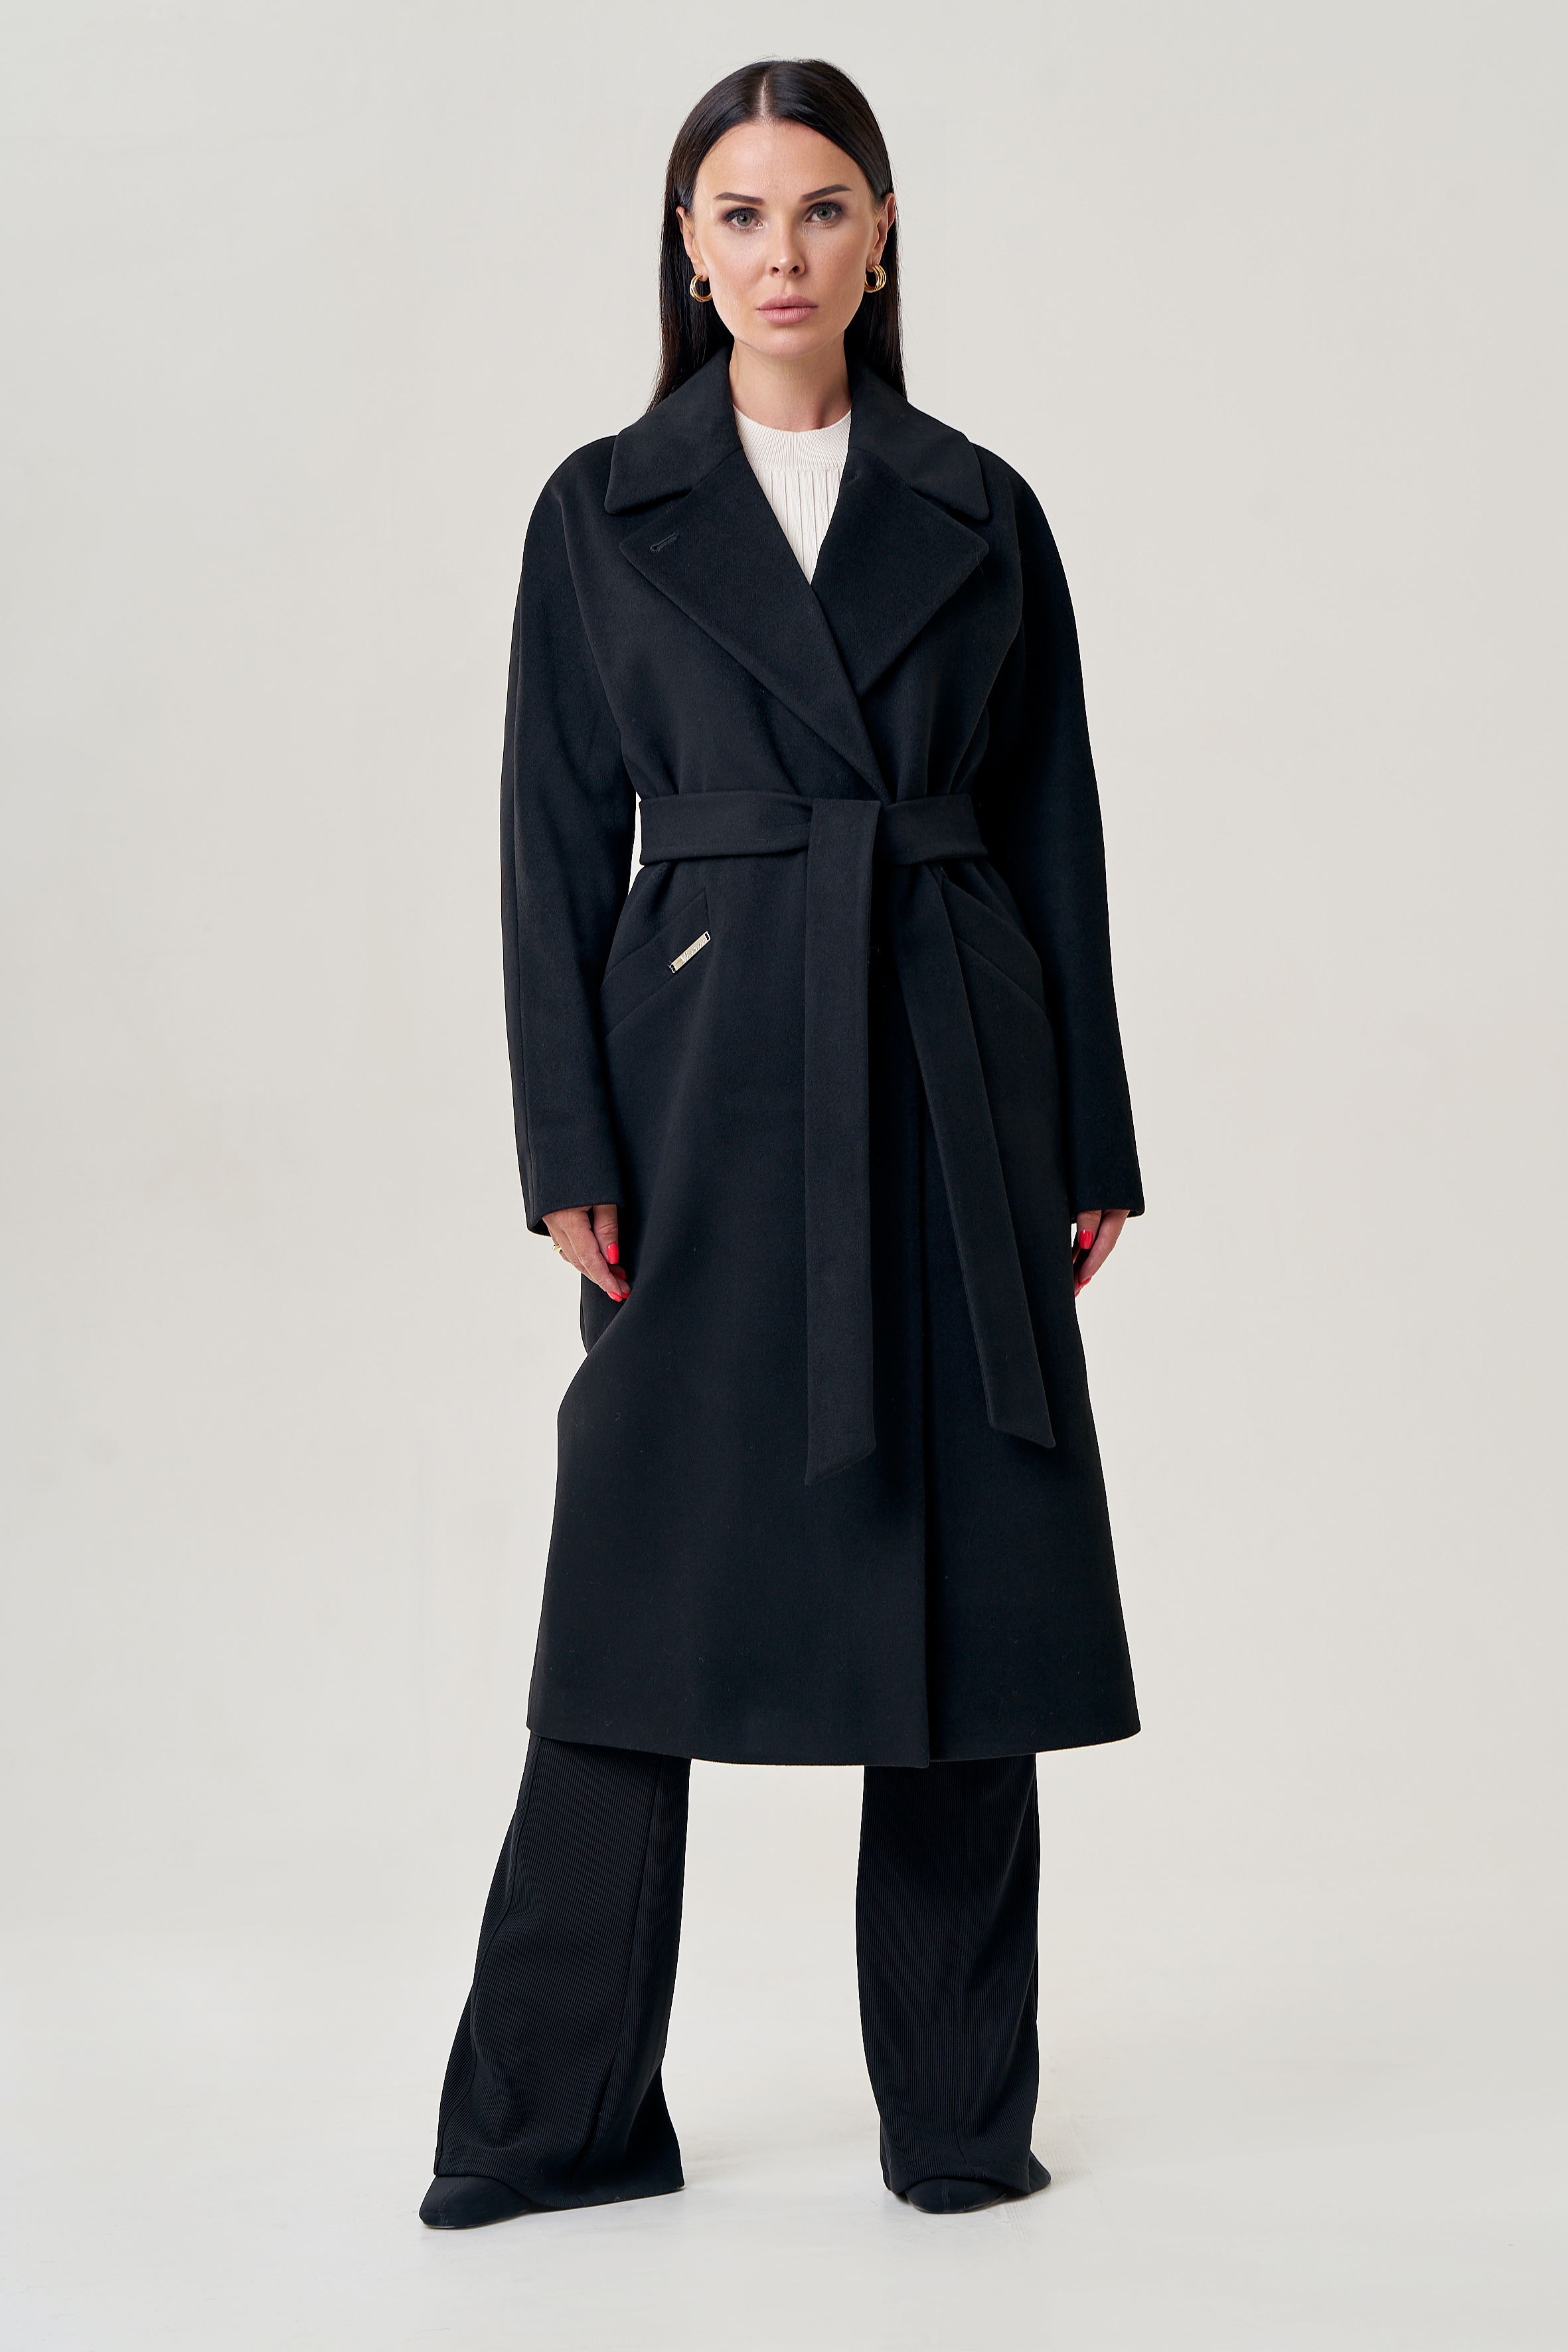 Пальто женское черного цвета 22959 купить в интернет-магазине с доставкой